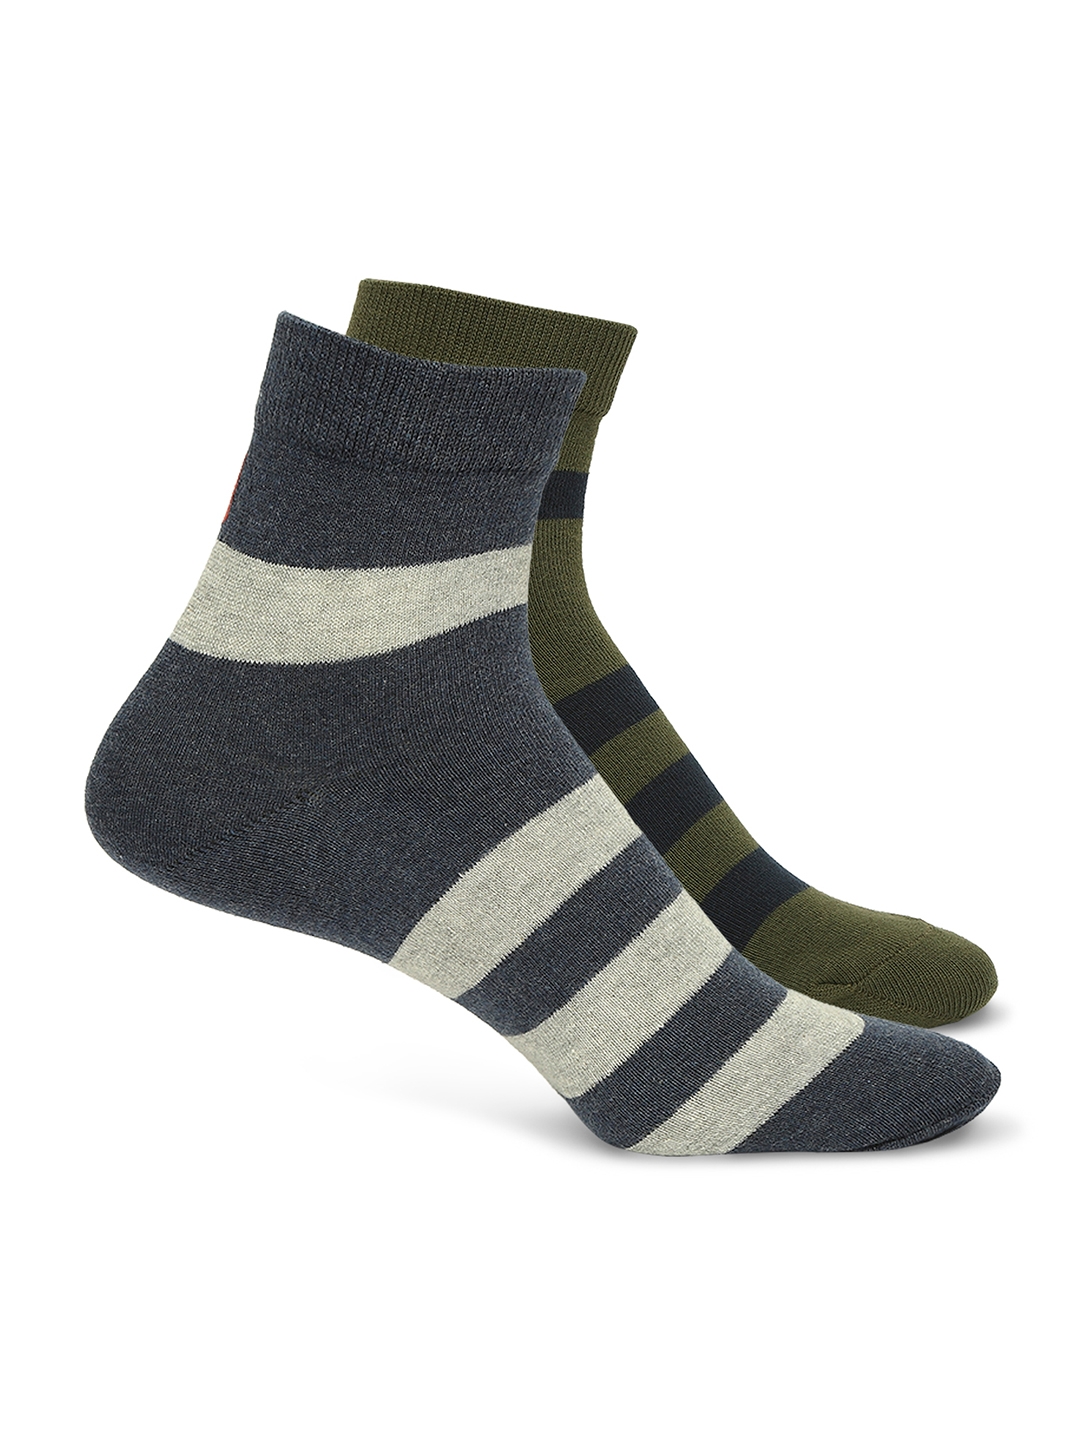 spykar | Underjeans by Spykar Premium Olive & Navy Melange Ankle Length Socks - Pack Of 2